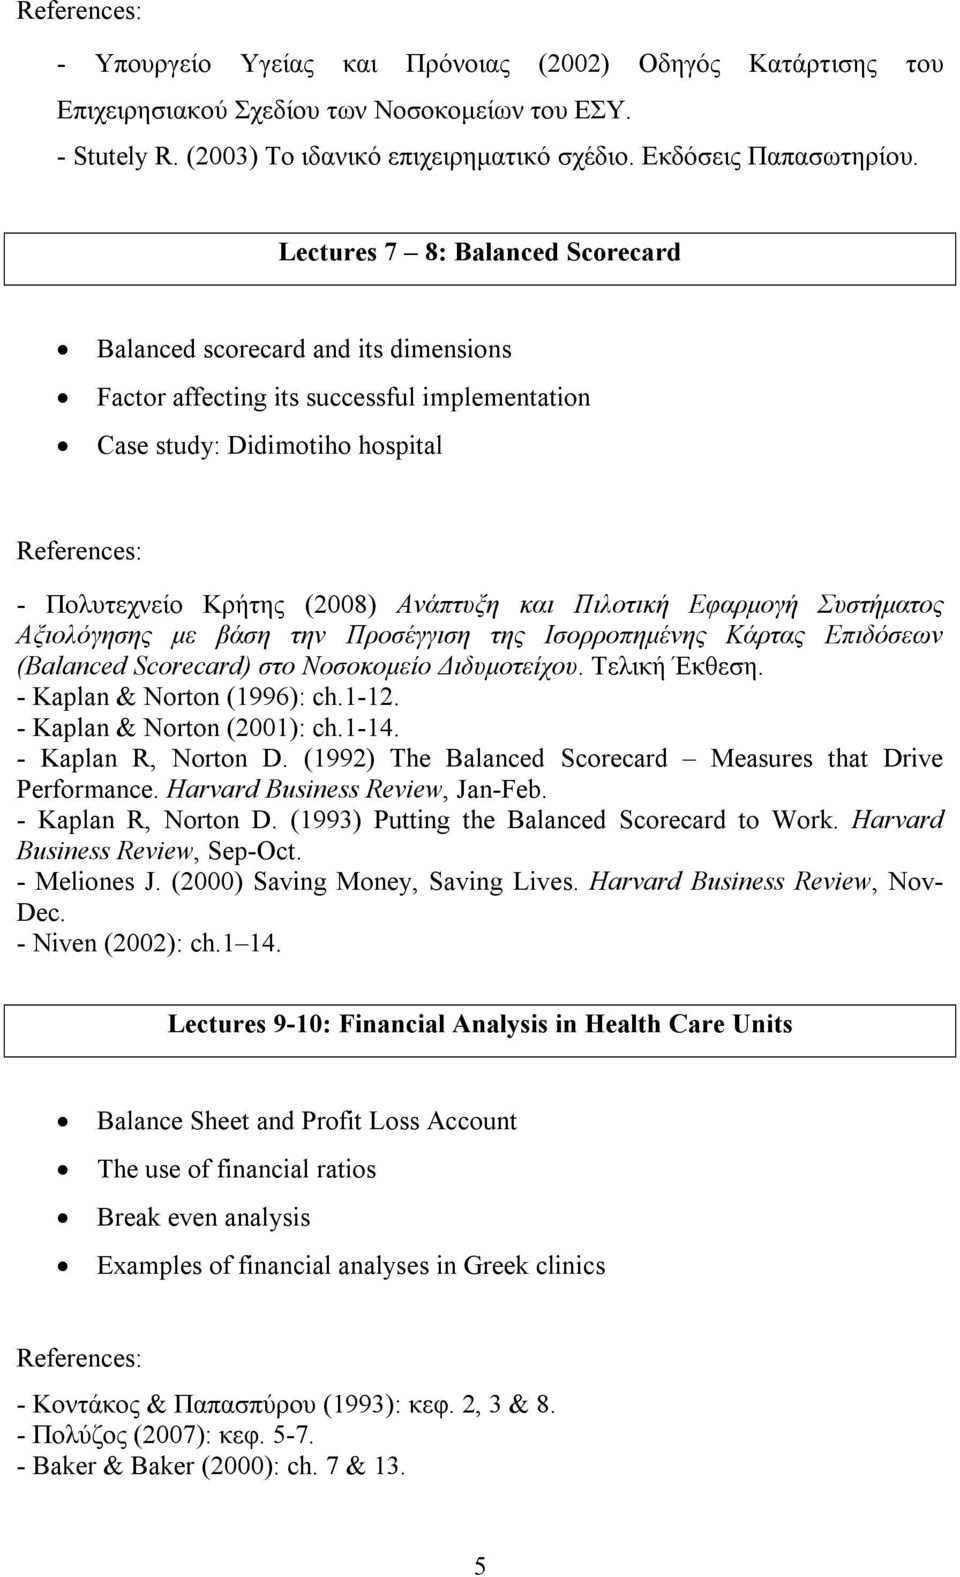 Εφαρμογή Συστήματος Αξιολόγησης με βάση την Προσέγγιση της Ισορροπημένης Κάρτας Επιδόσεων (Balanced Scorecard) στο Νοσοκομείο Διδυμοτείχου. Τελική Έκθεση. - Kaplan & Norton (1996): ch.1-12.